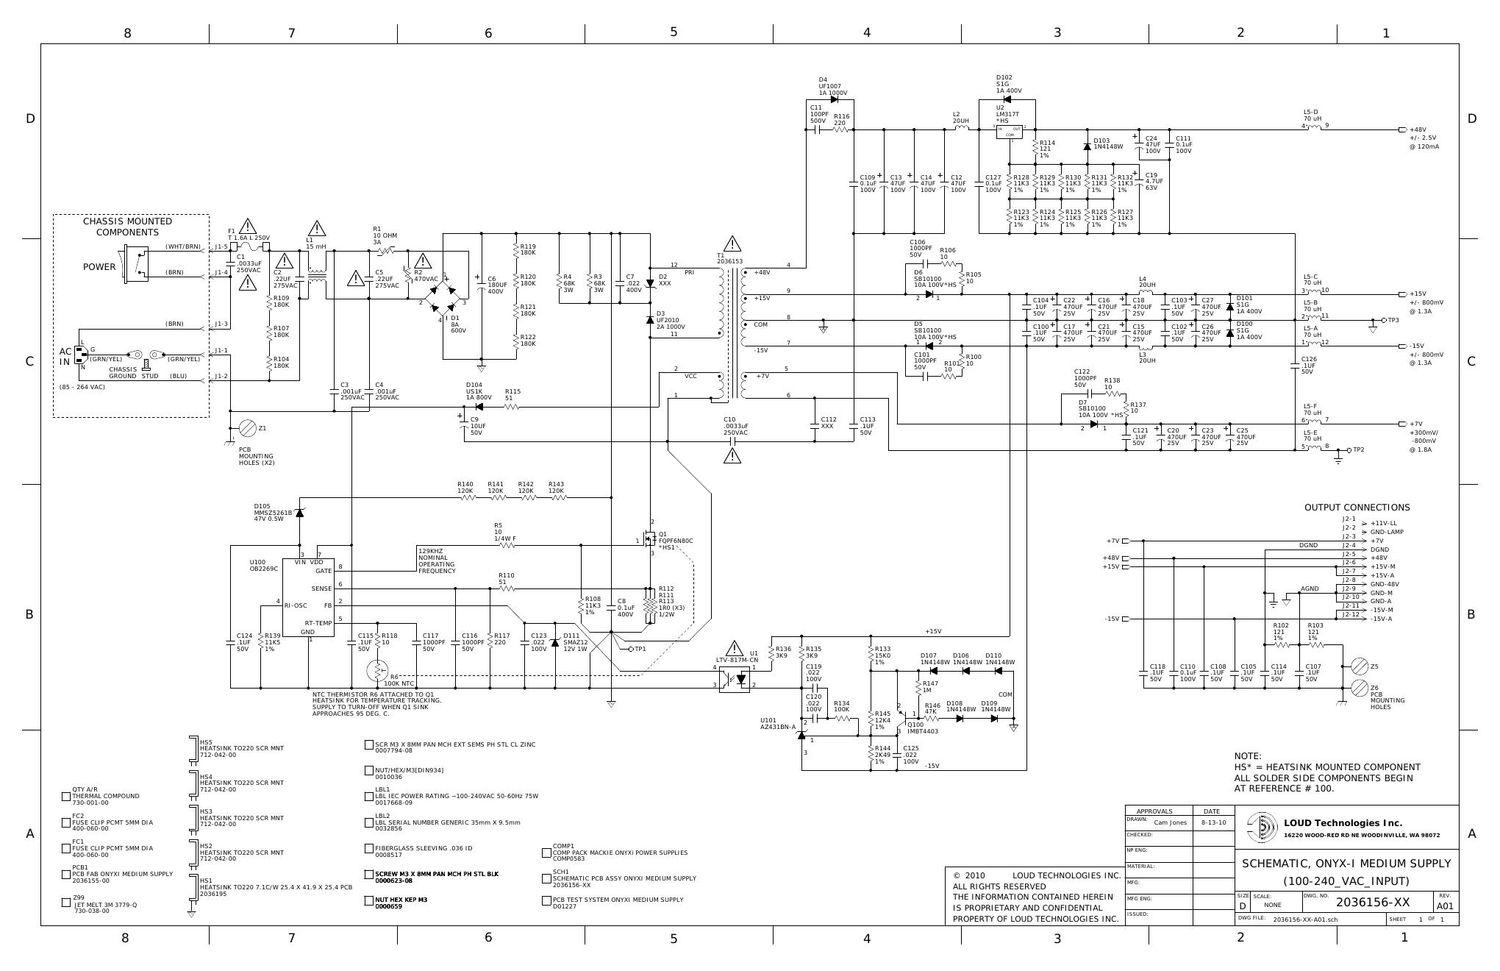 Mackie Linear Power Supply Onyx I ProFX Schematic